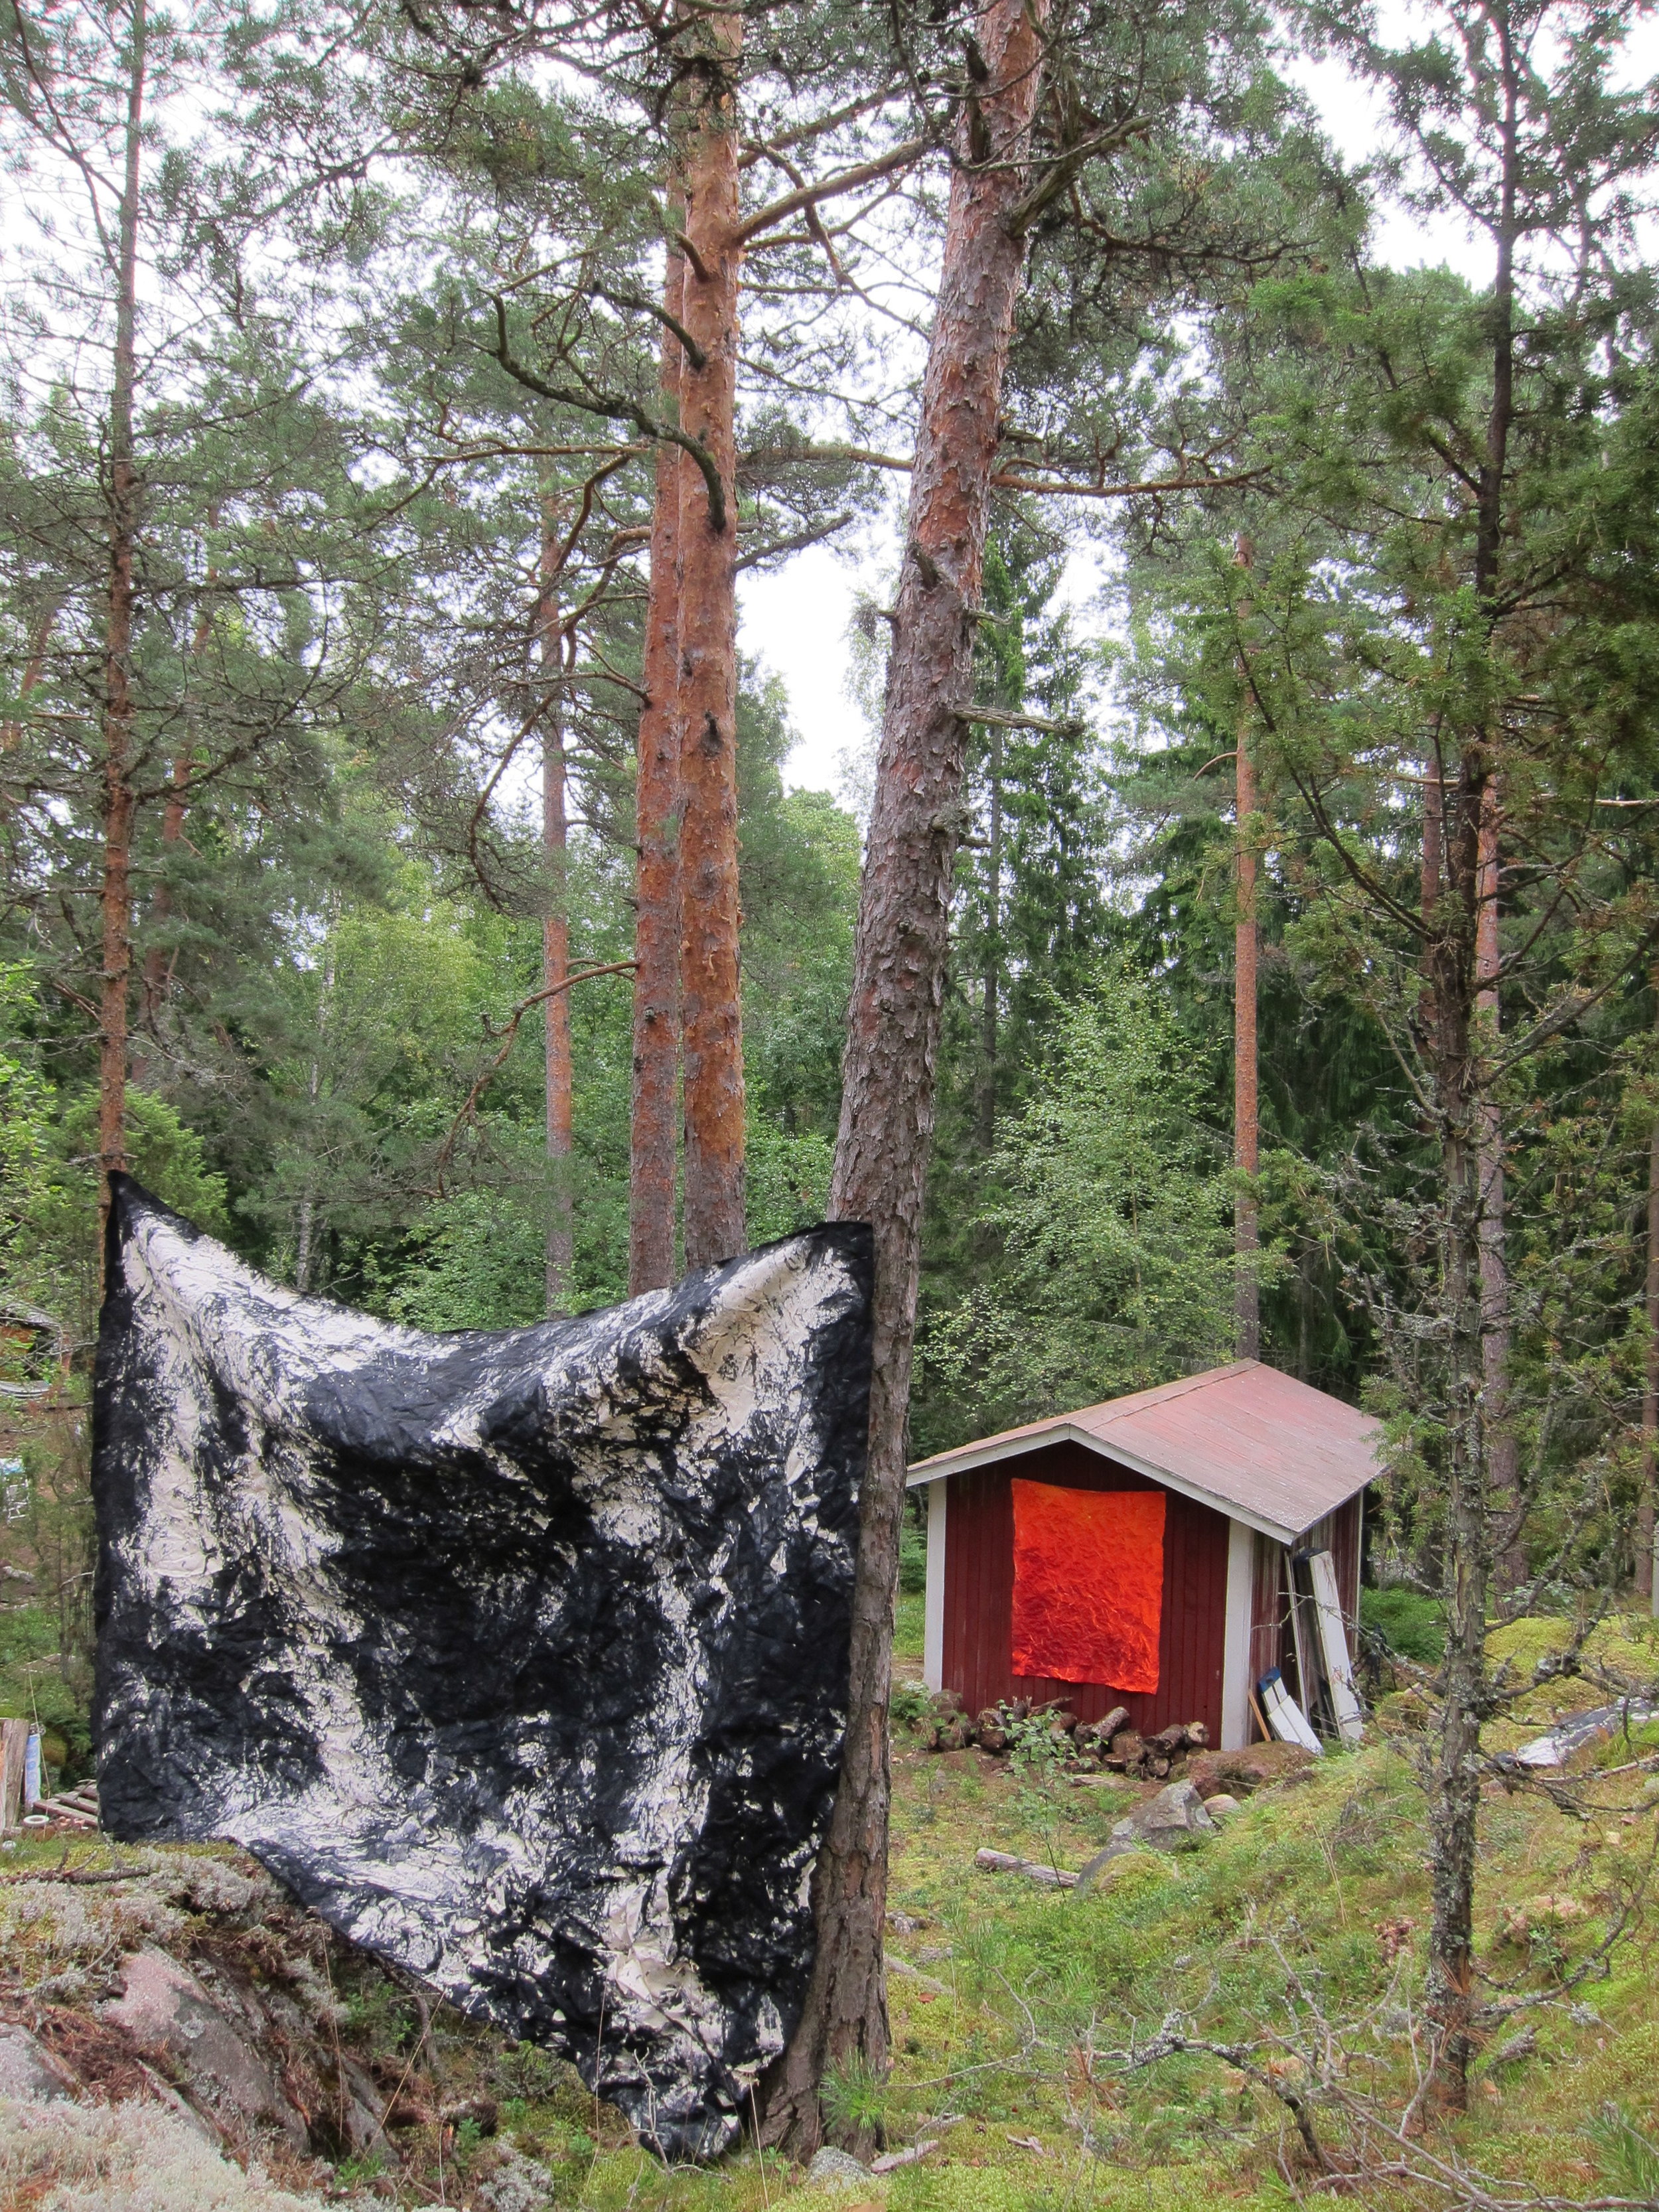  Forest studio.  Barösund, Finland 2017. 